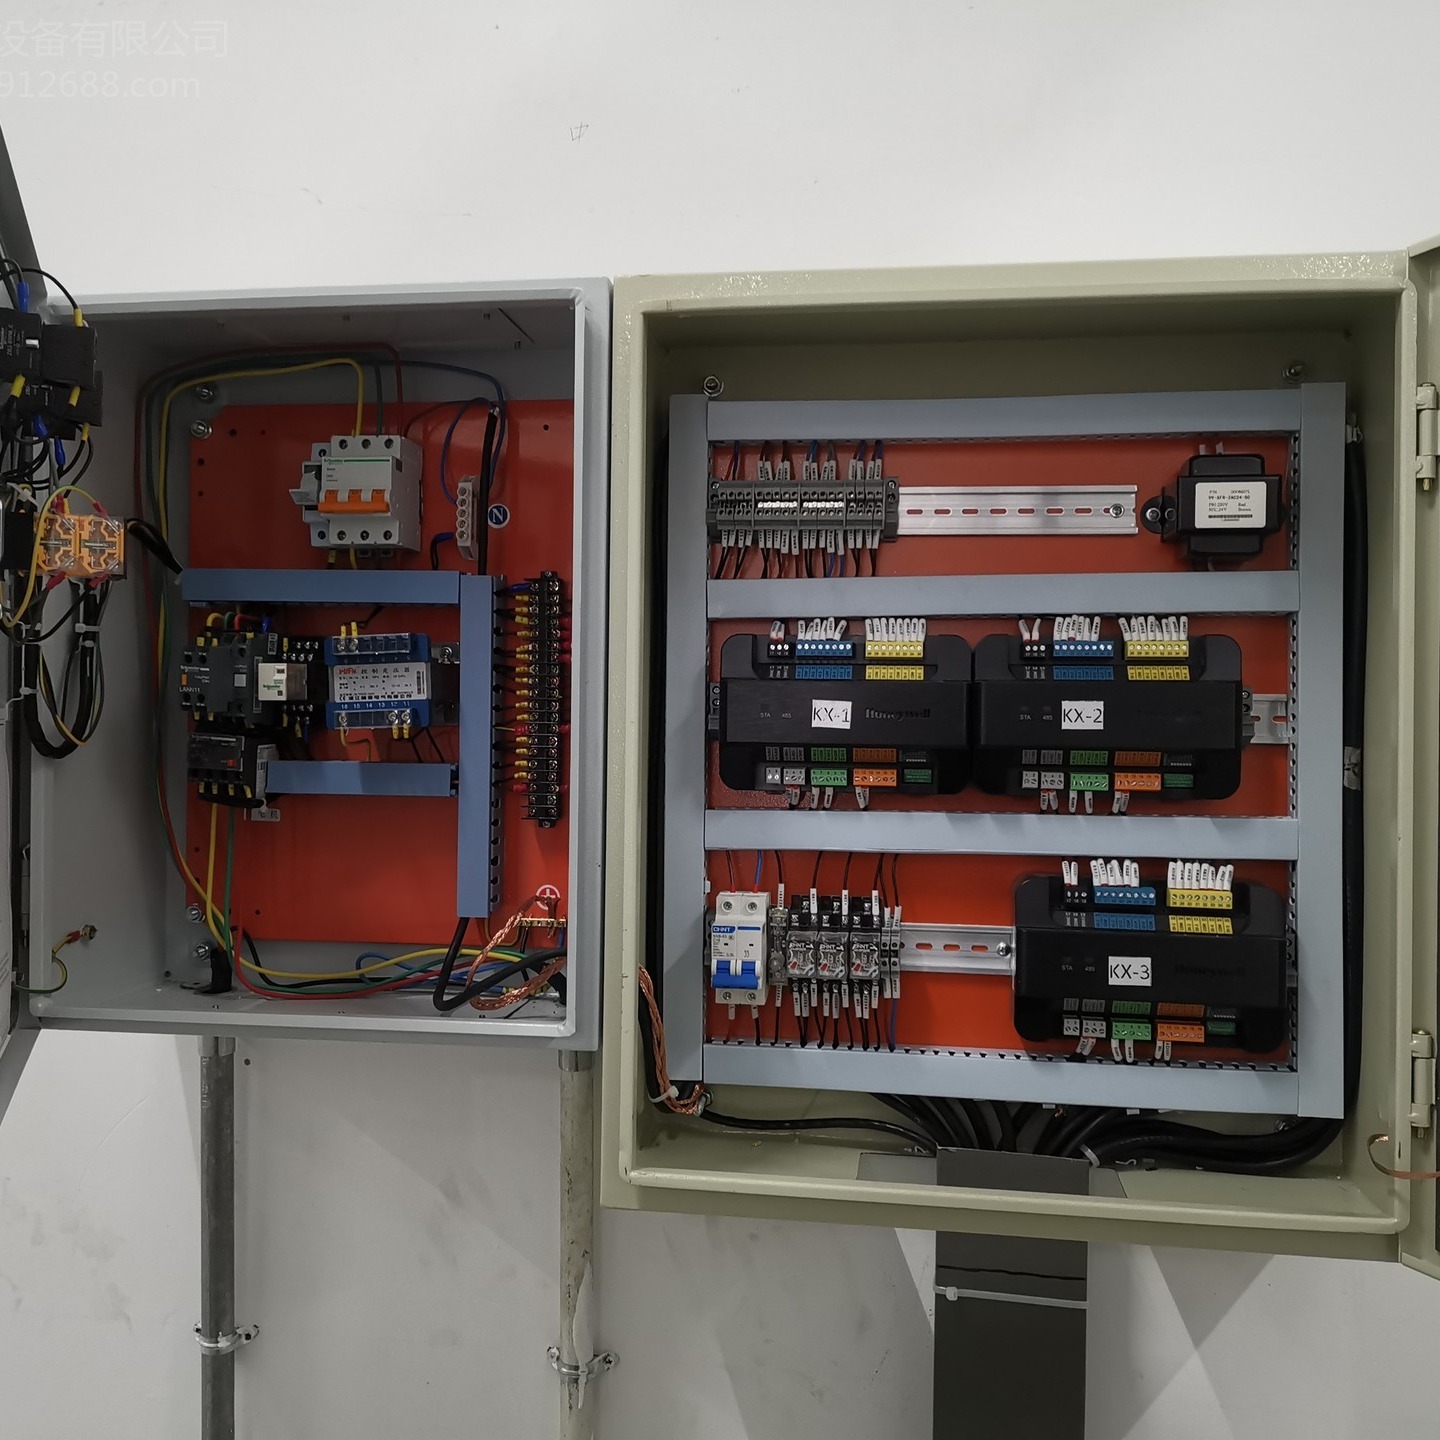 批发供应Honeywell霍尼韦尔中央空调DDC控制器触摸屏控制柜PUC5533PB2